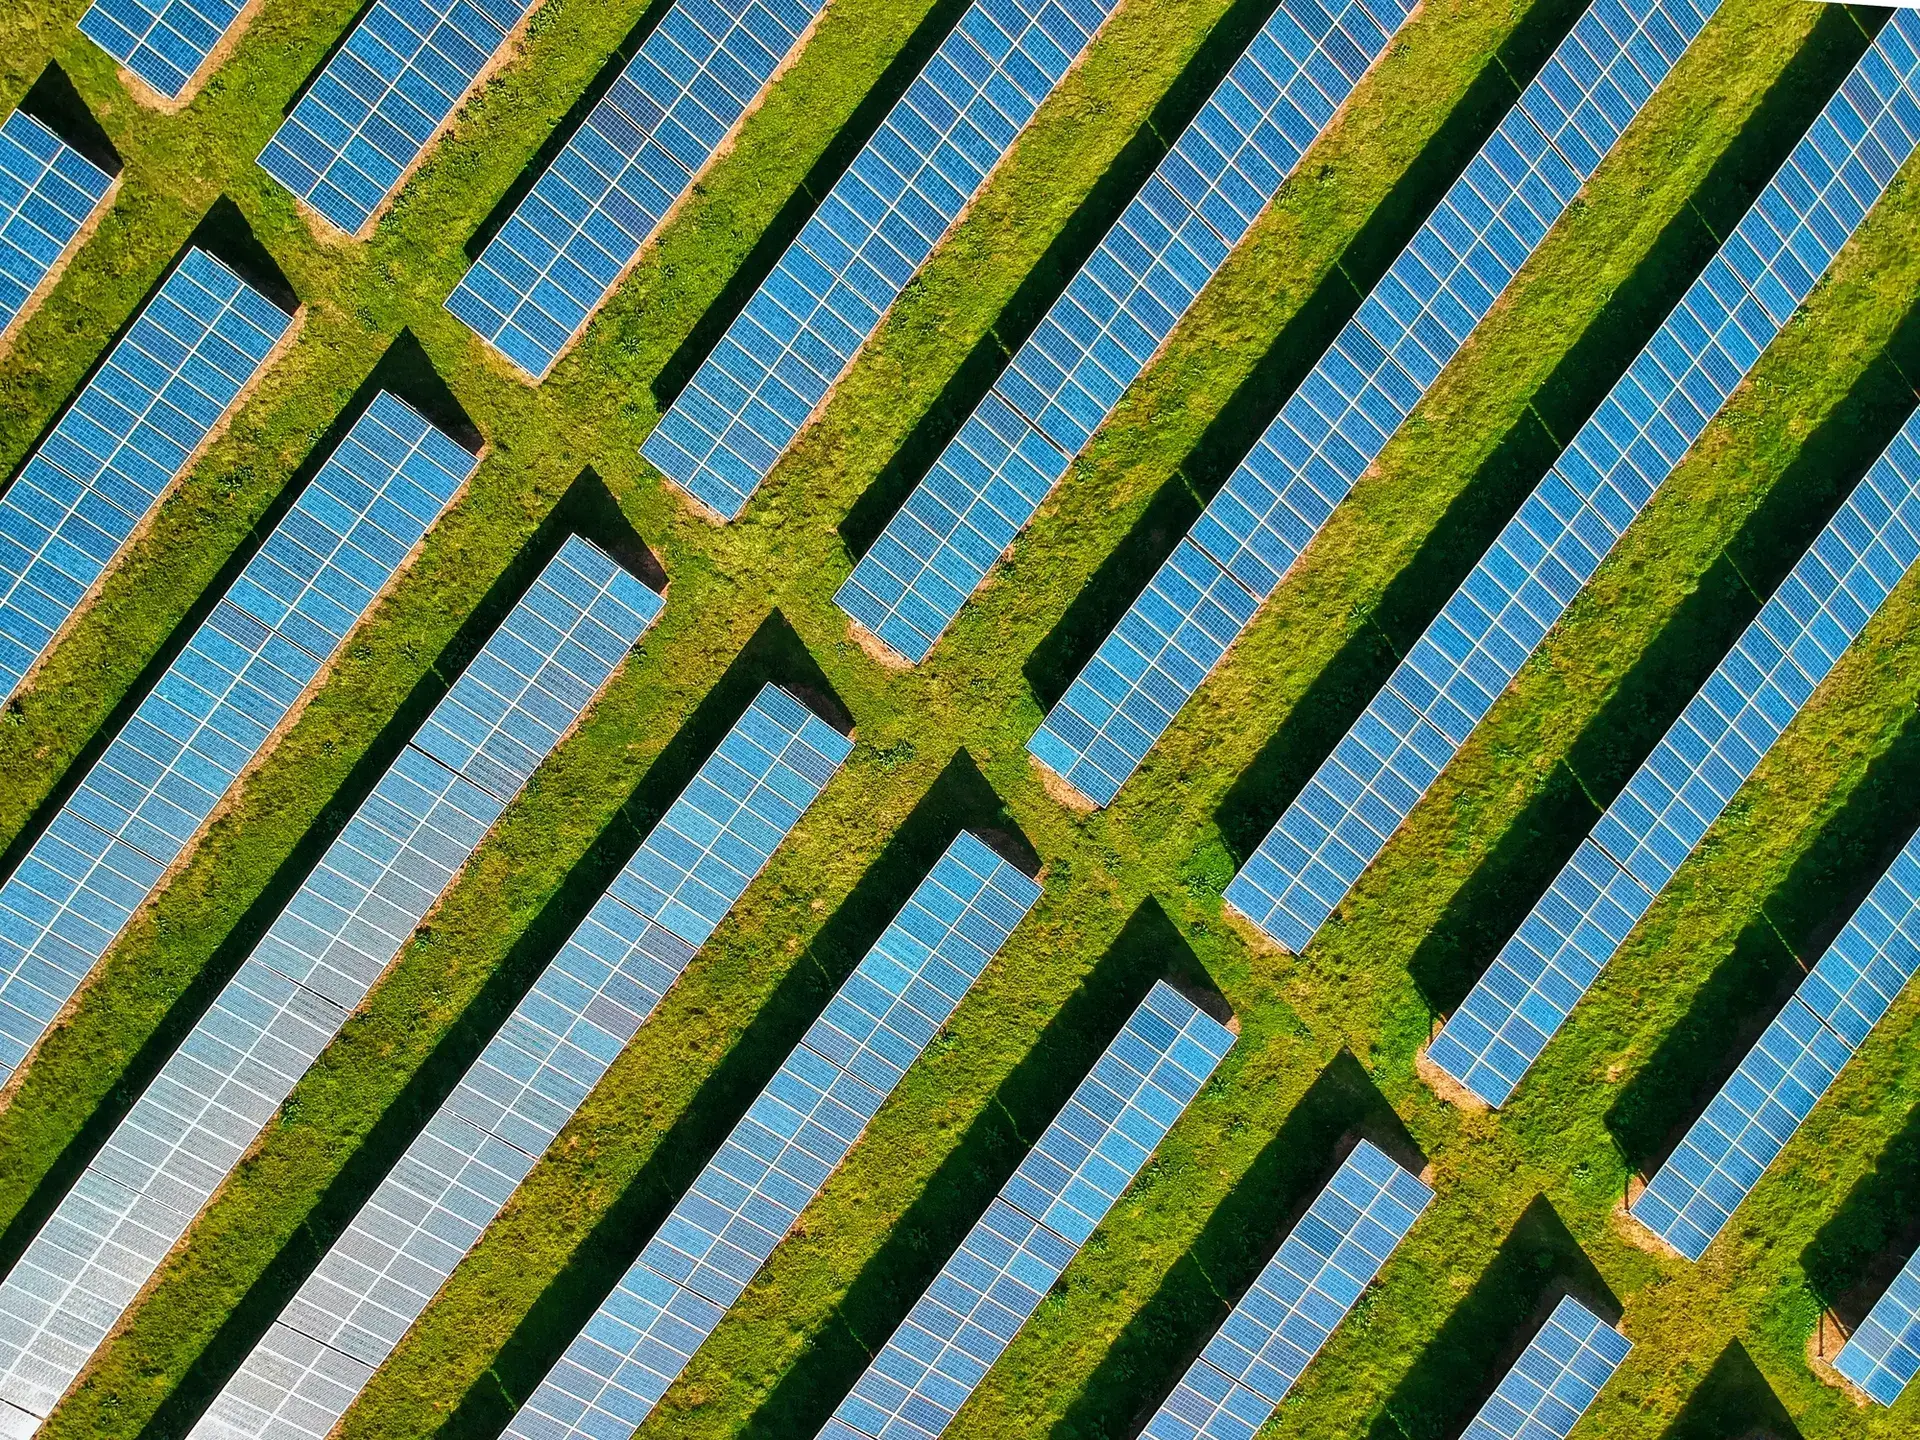 Solarenergie – Die Energie der Zukunft?